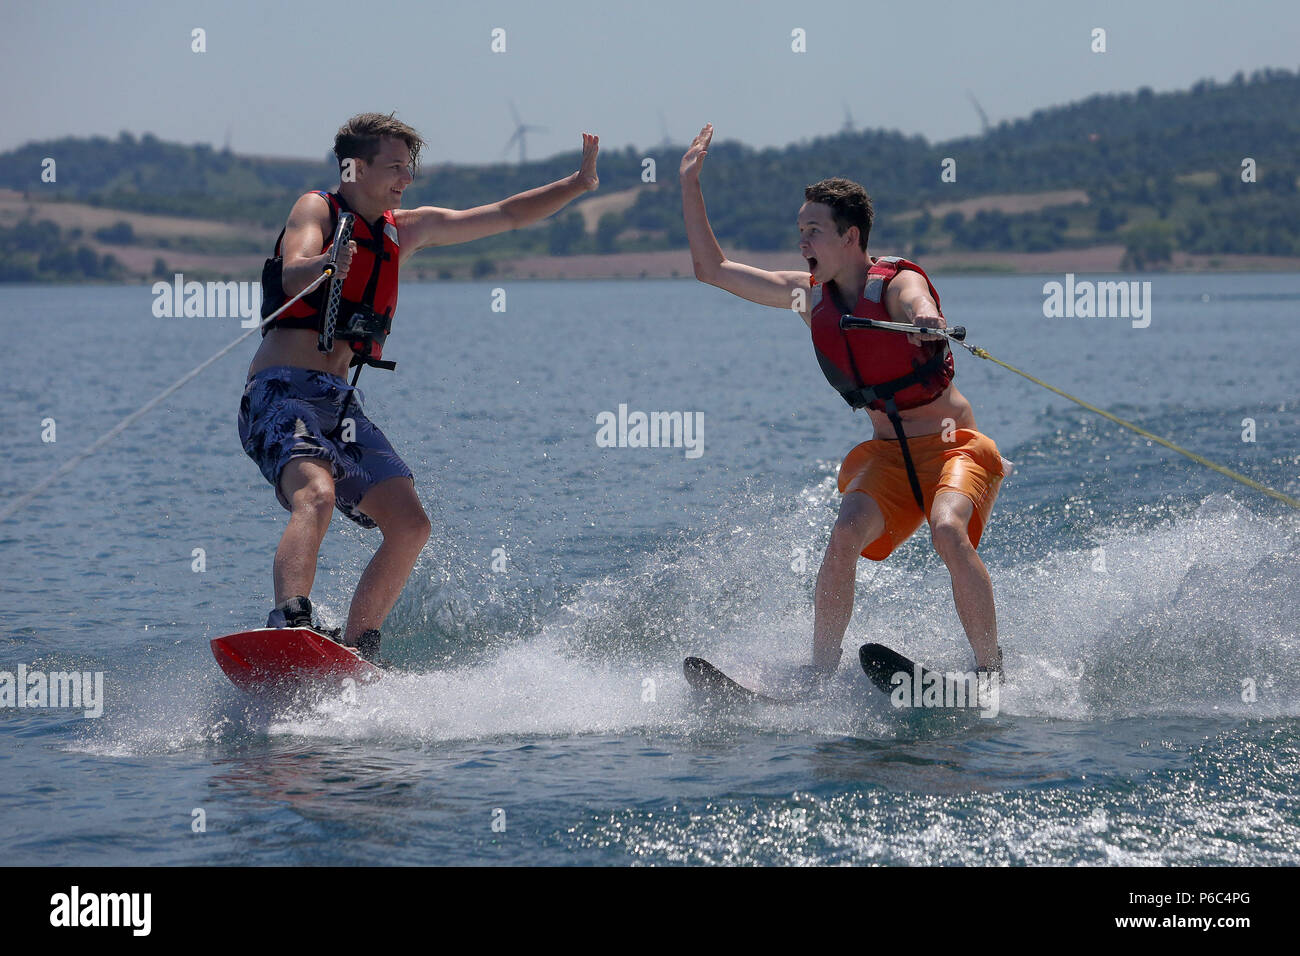 Capodimonte, Italy, boys go water skiing on Lake Bolsena Stock Photo